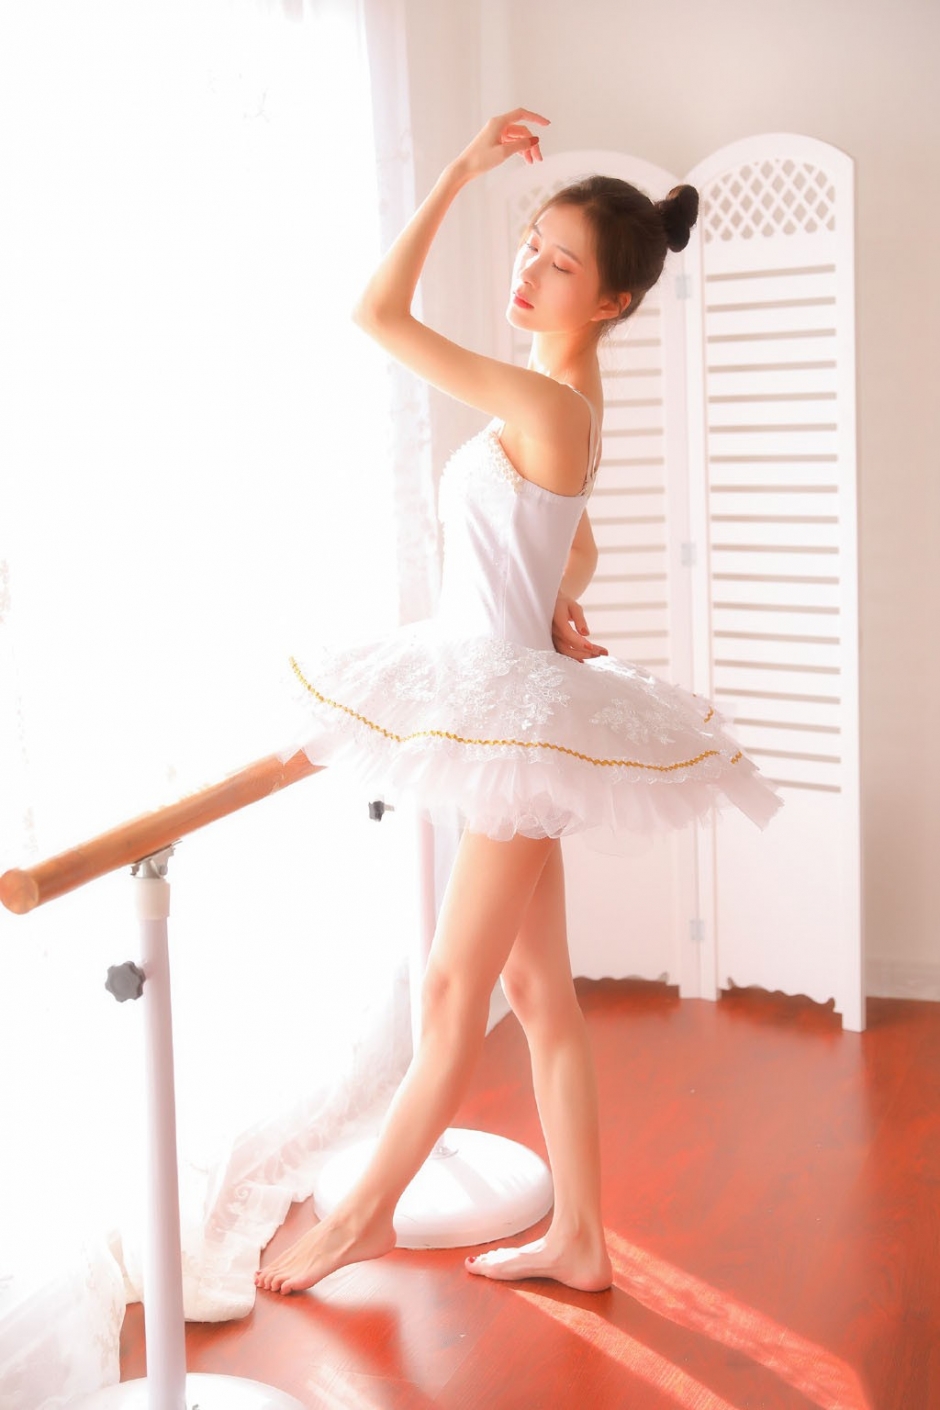 芭蕾舞美女高束发髻吊带舞蹈服柔软身体翩翩起舞写真图片